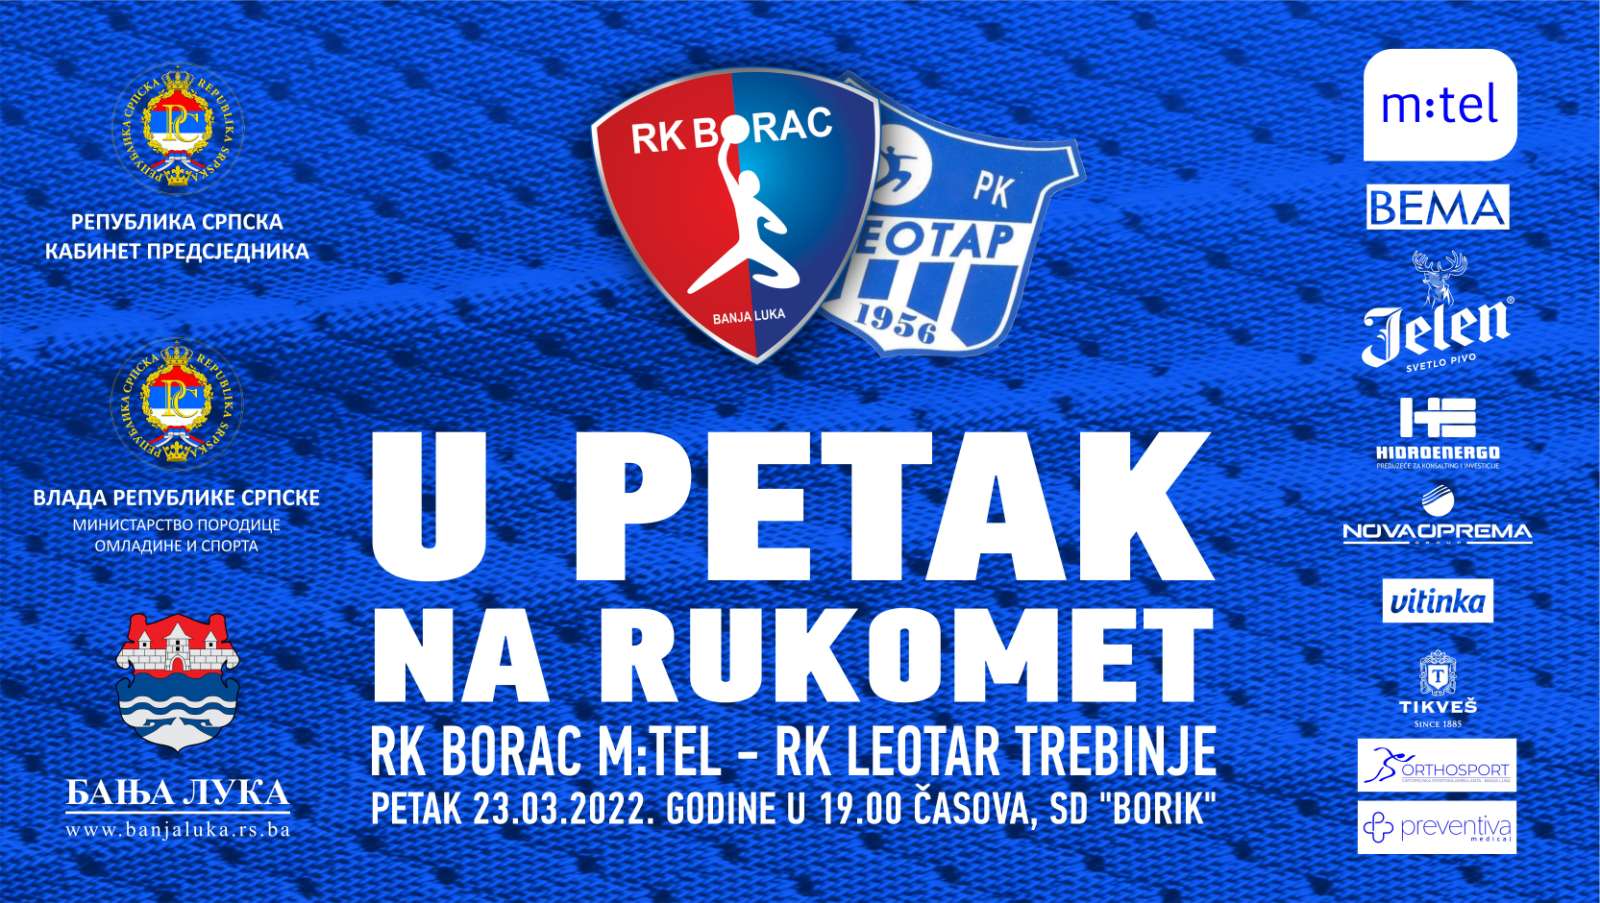 RK Borac M:tel vs RK Leotar Premijer liga BiH 21.kolo seyona 2021/22